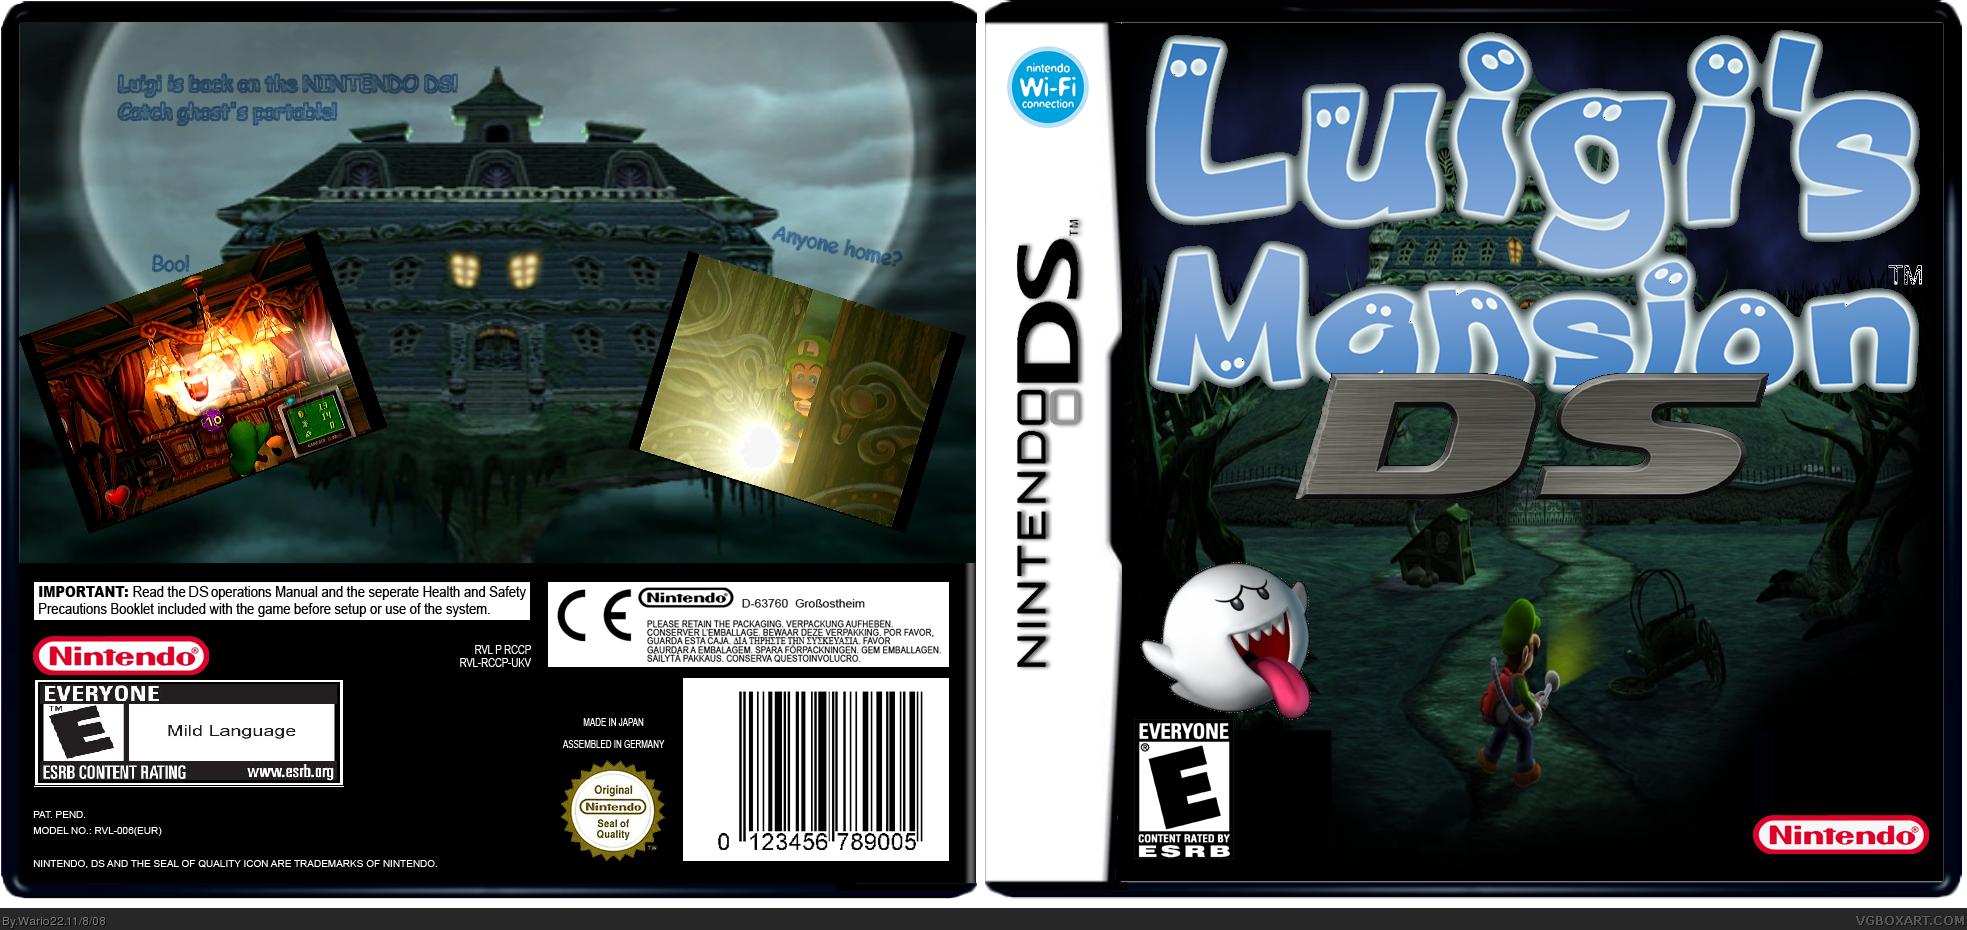 Luigi's Mansion DS box cover